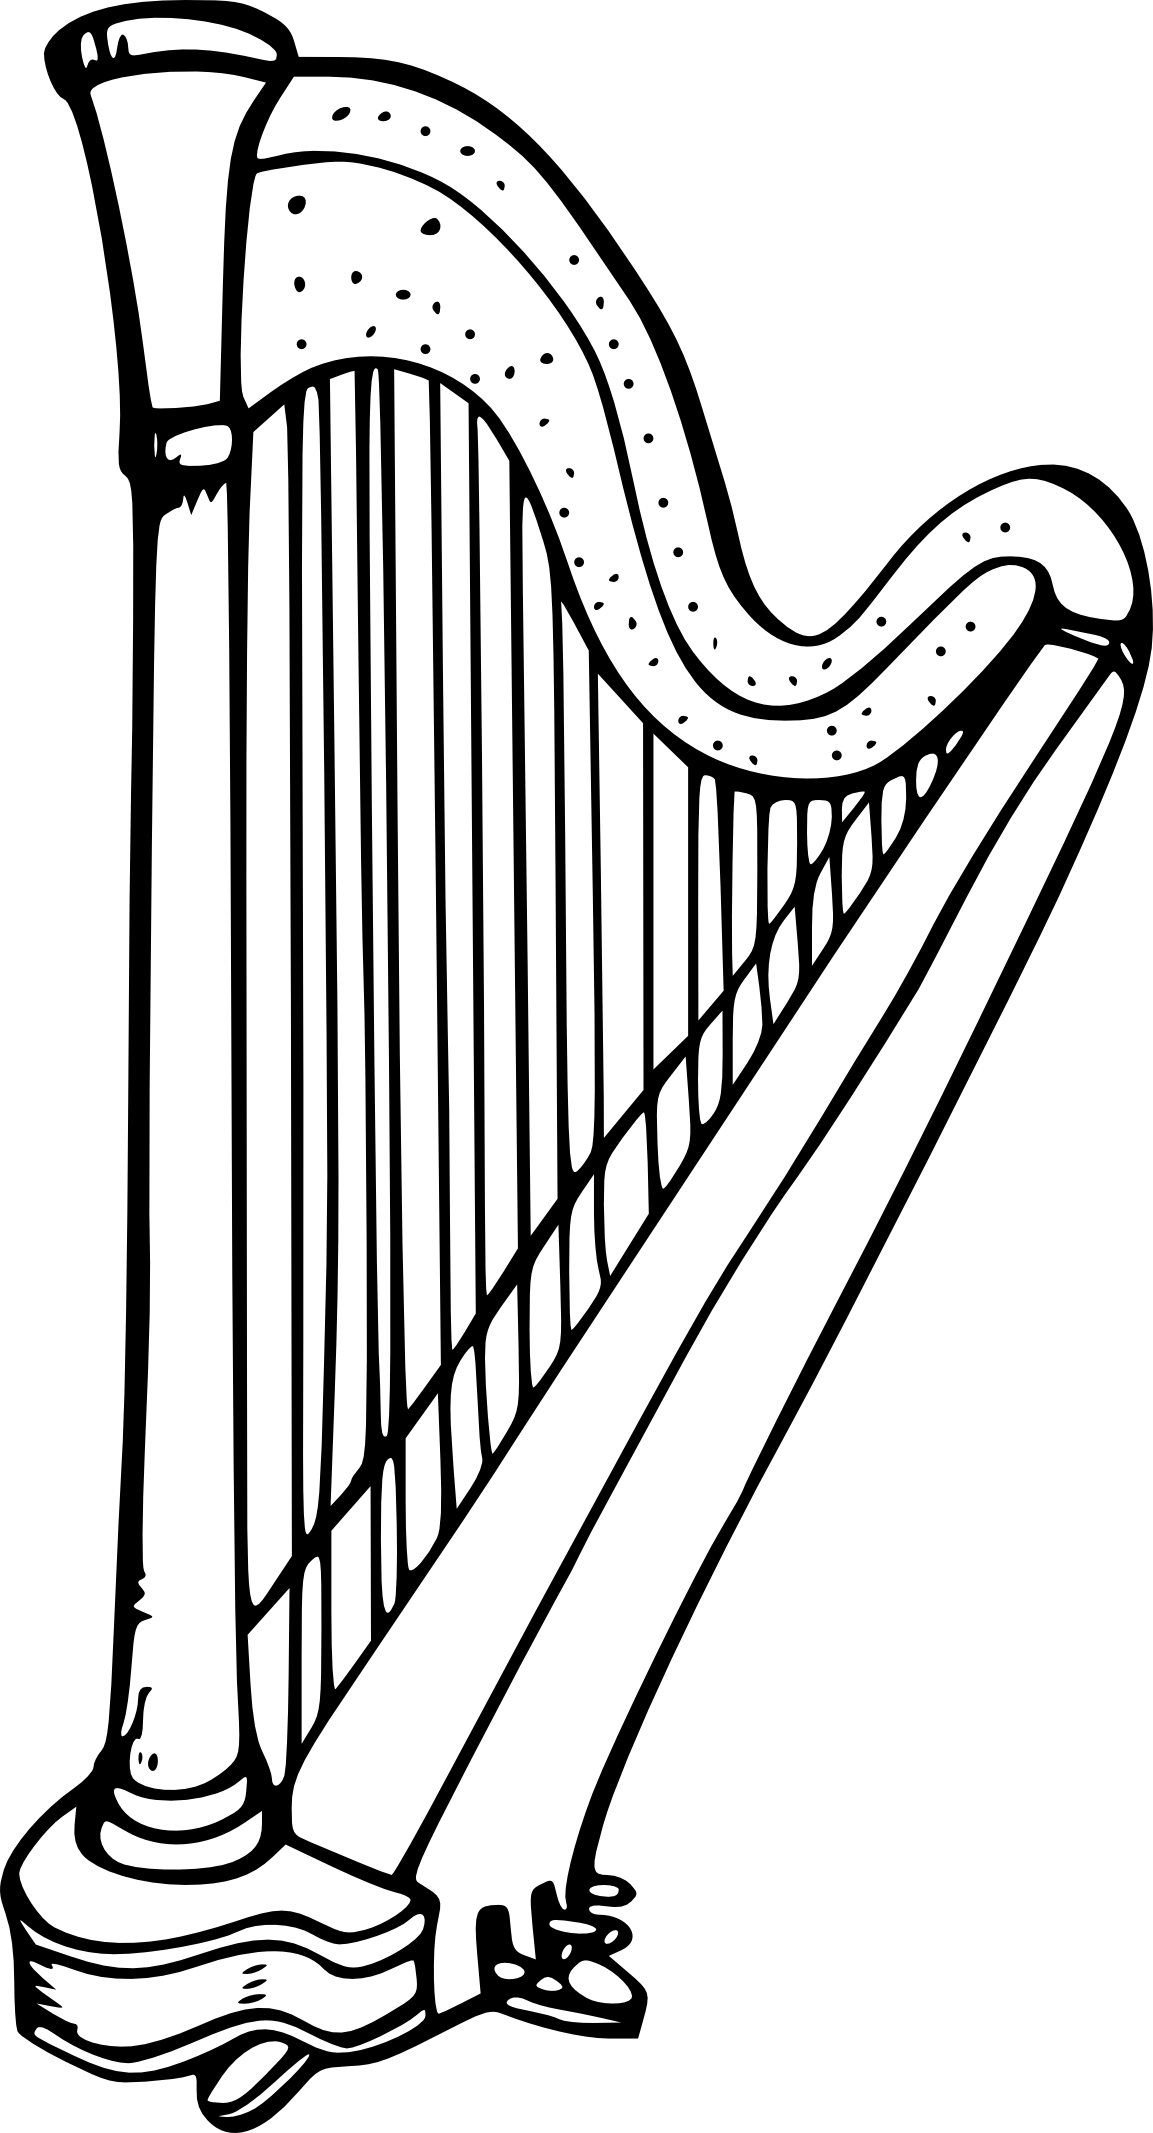 barbe bois Mention dessin de harpe a imprimer Performance Campagne étranger